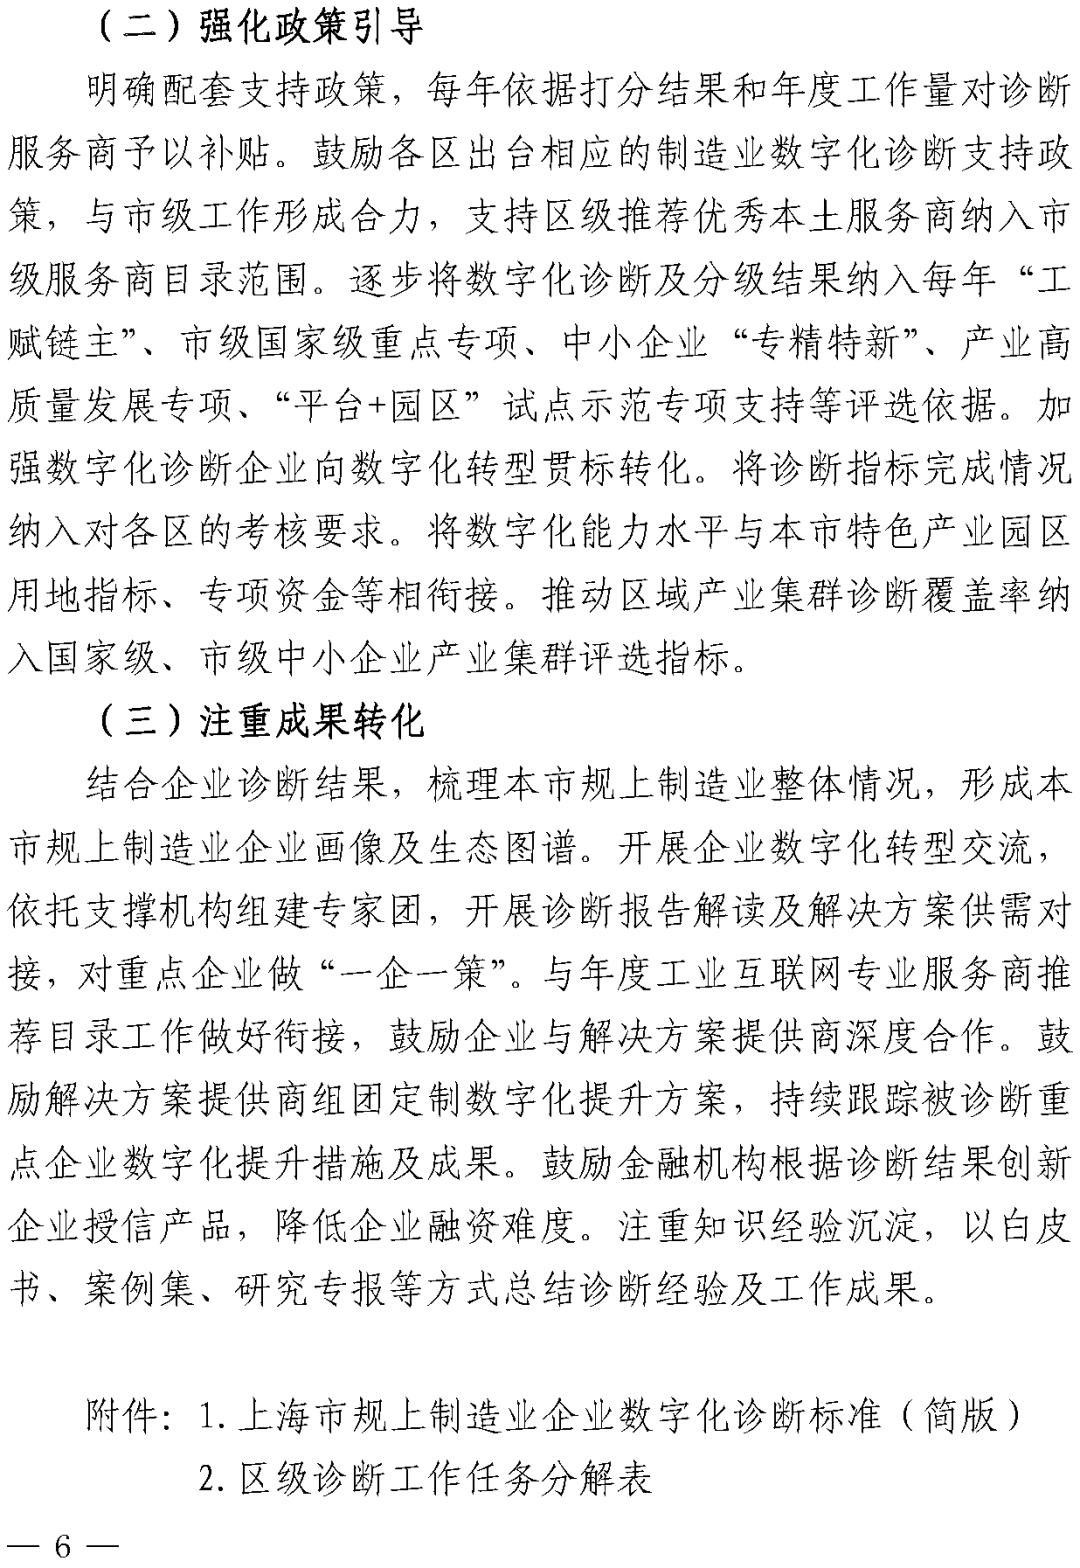 上海：到2025年规上制造业企业数字化转型比例不低于80%,图片,数字化,数字化转型,专精特新,打通,供应链,第6张